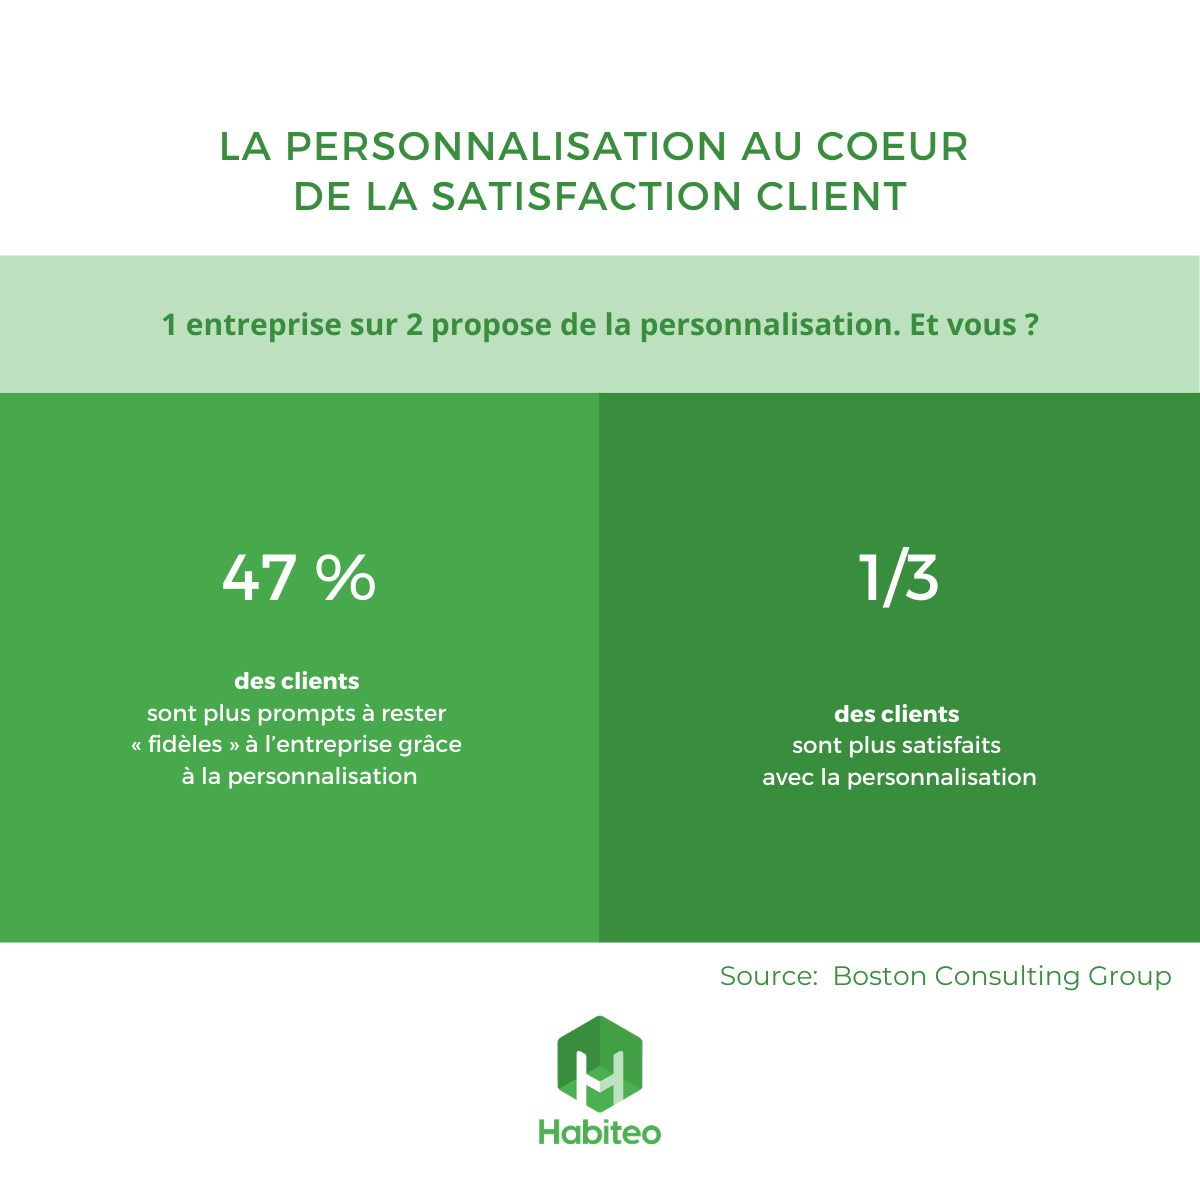 https://www.habiteo.com/wp-content/uploads/2021/04/Copie-de-Copie-de-La-personnalisation-au-c%C5%93ur-de-la-satisfaction-client-Habiteo.png